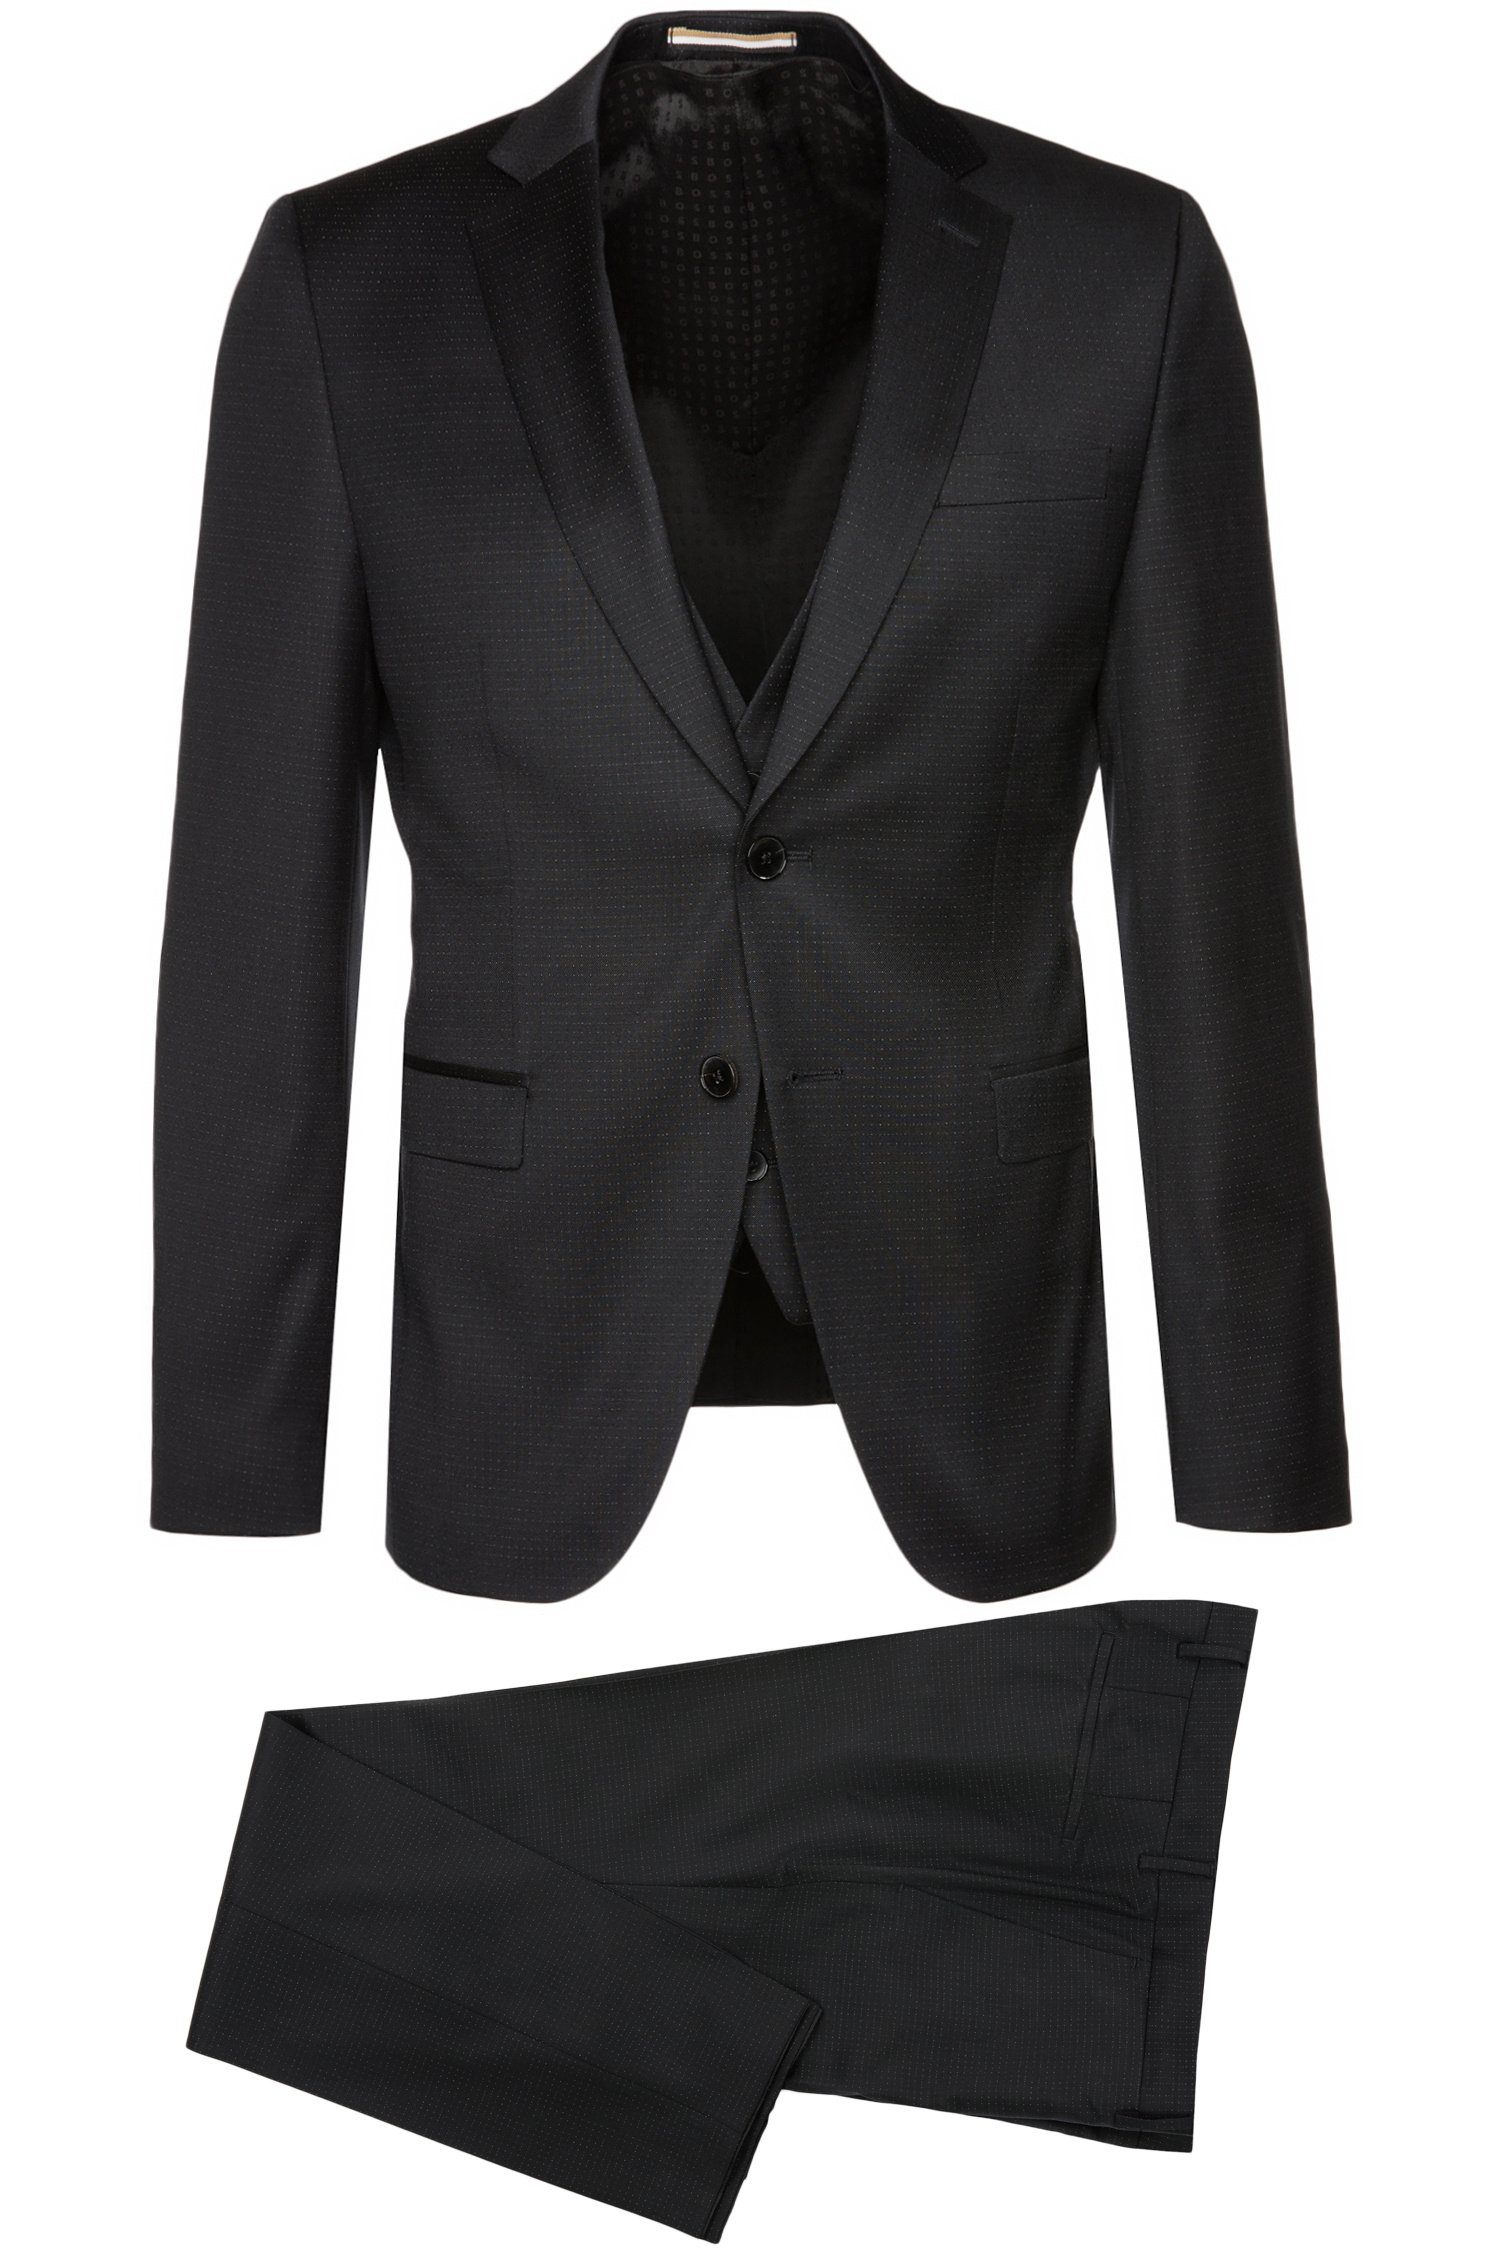 BOSS Anzug »H-Reymond« online kaufen | OTTO